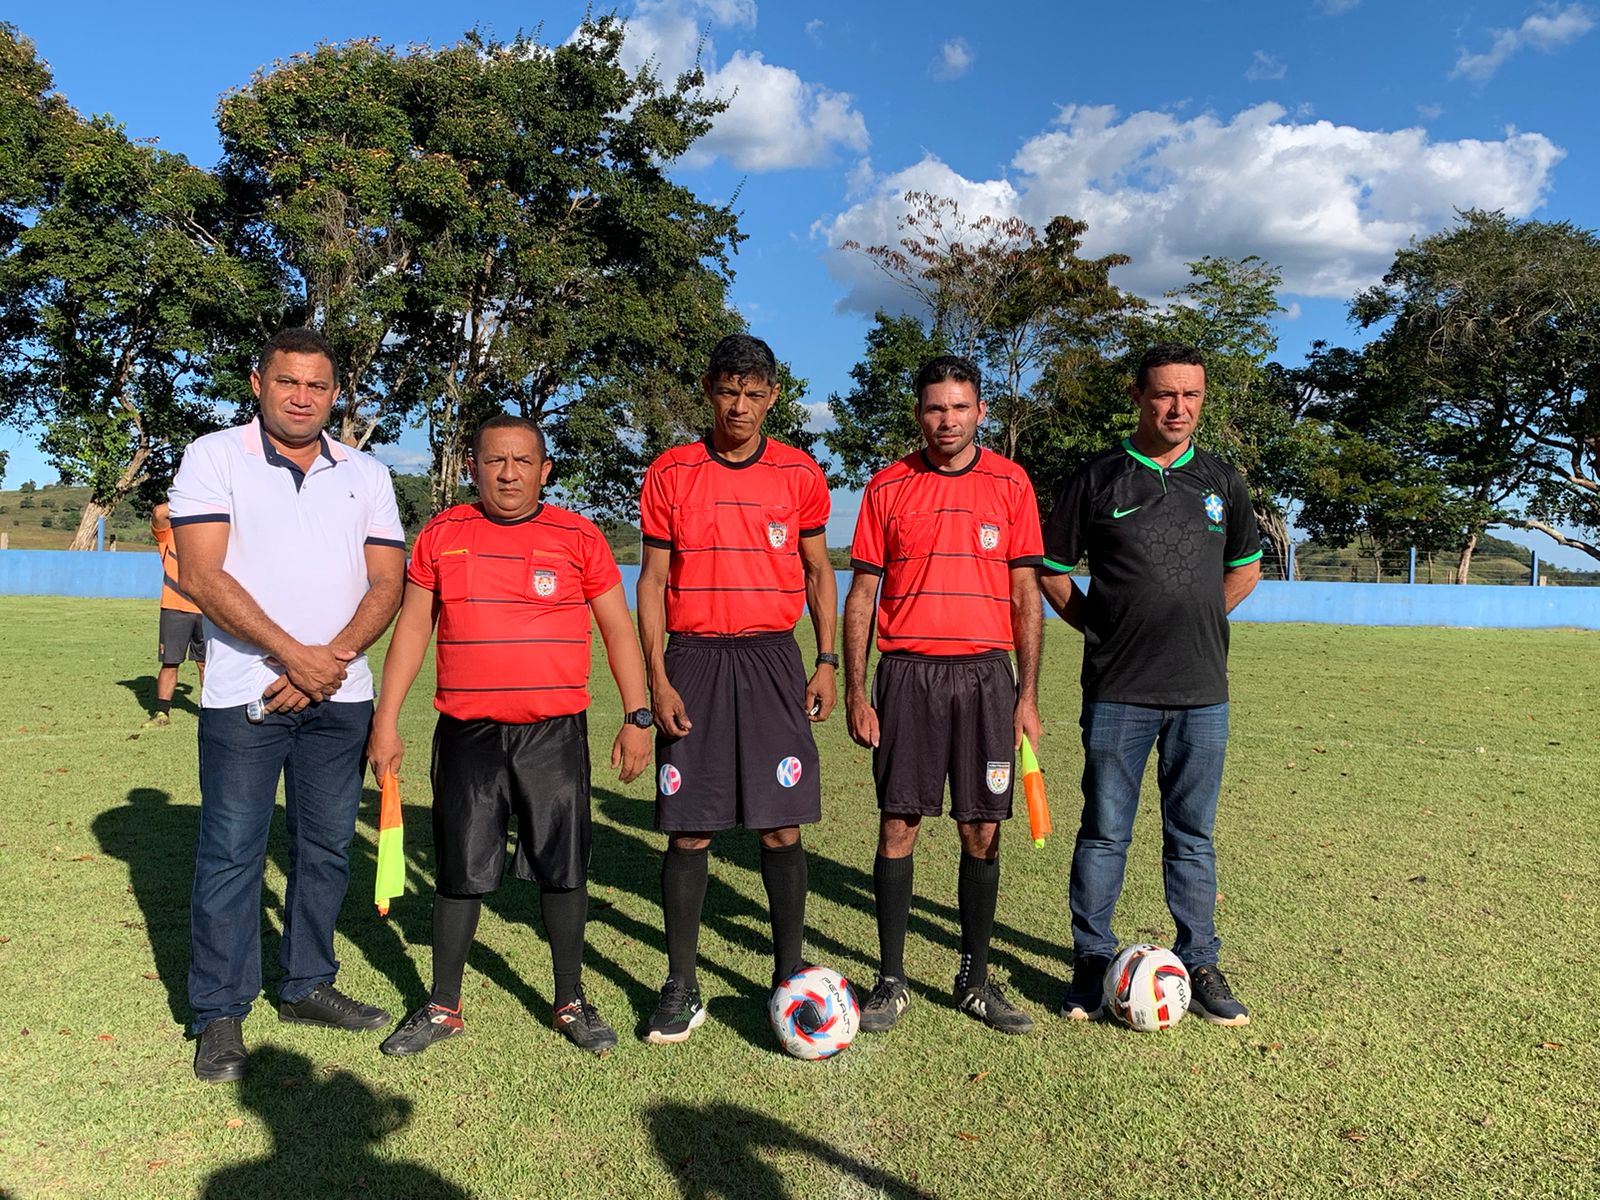 Prefeitura Municipal e Coordenação de Esportes realizam o I Campeonato Municipal de Futebol Indígena de Jenipapo dos Vieiras